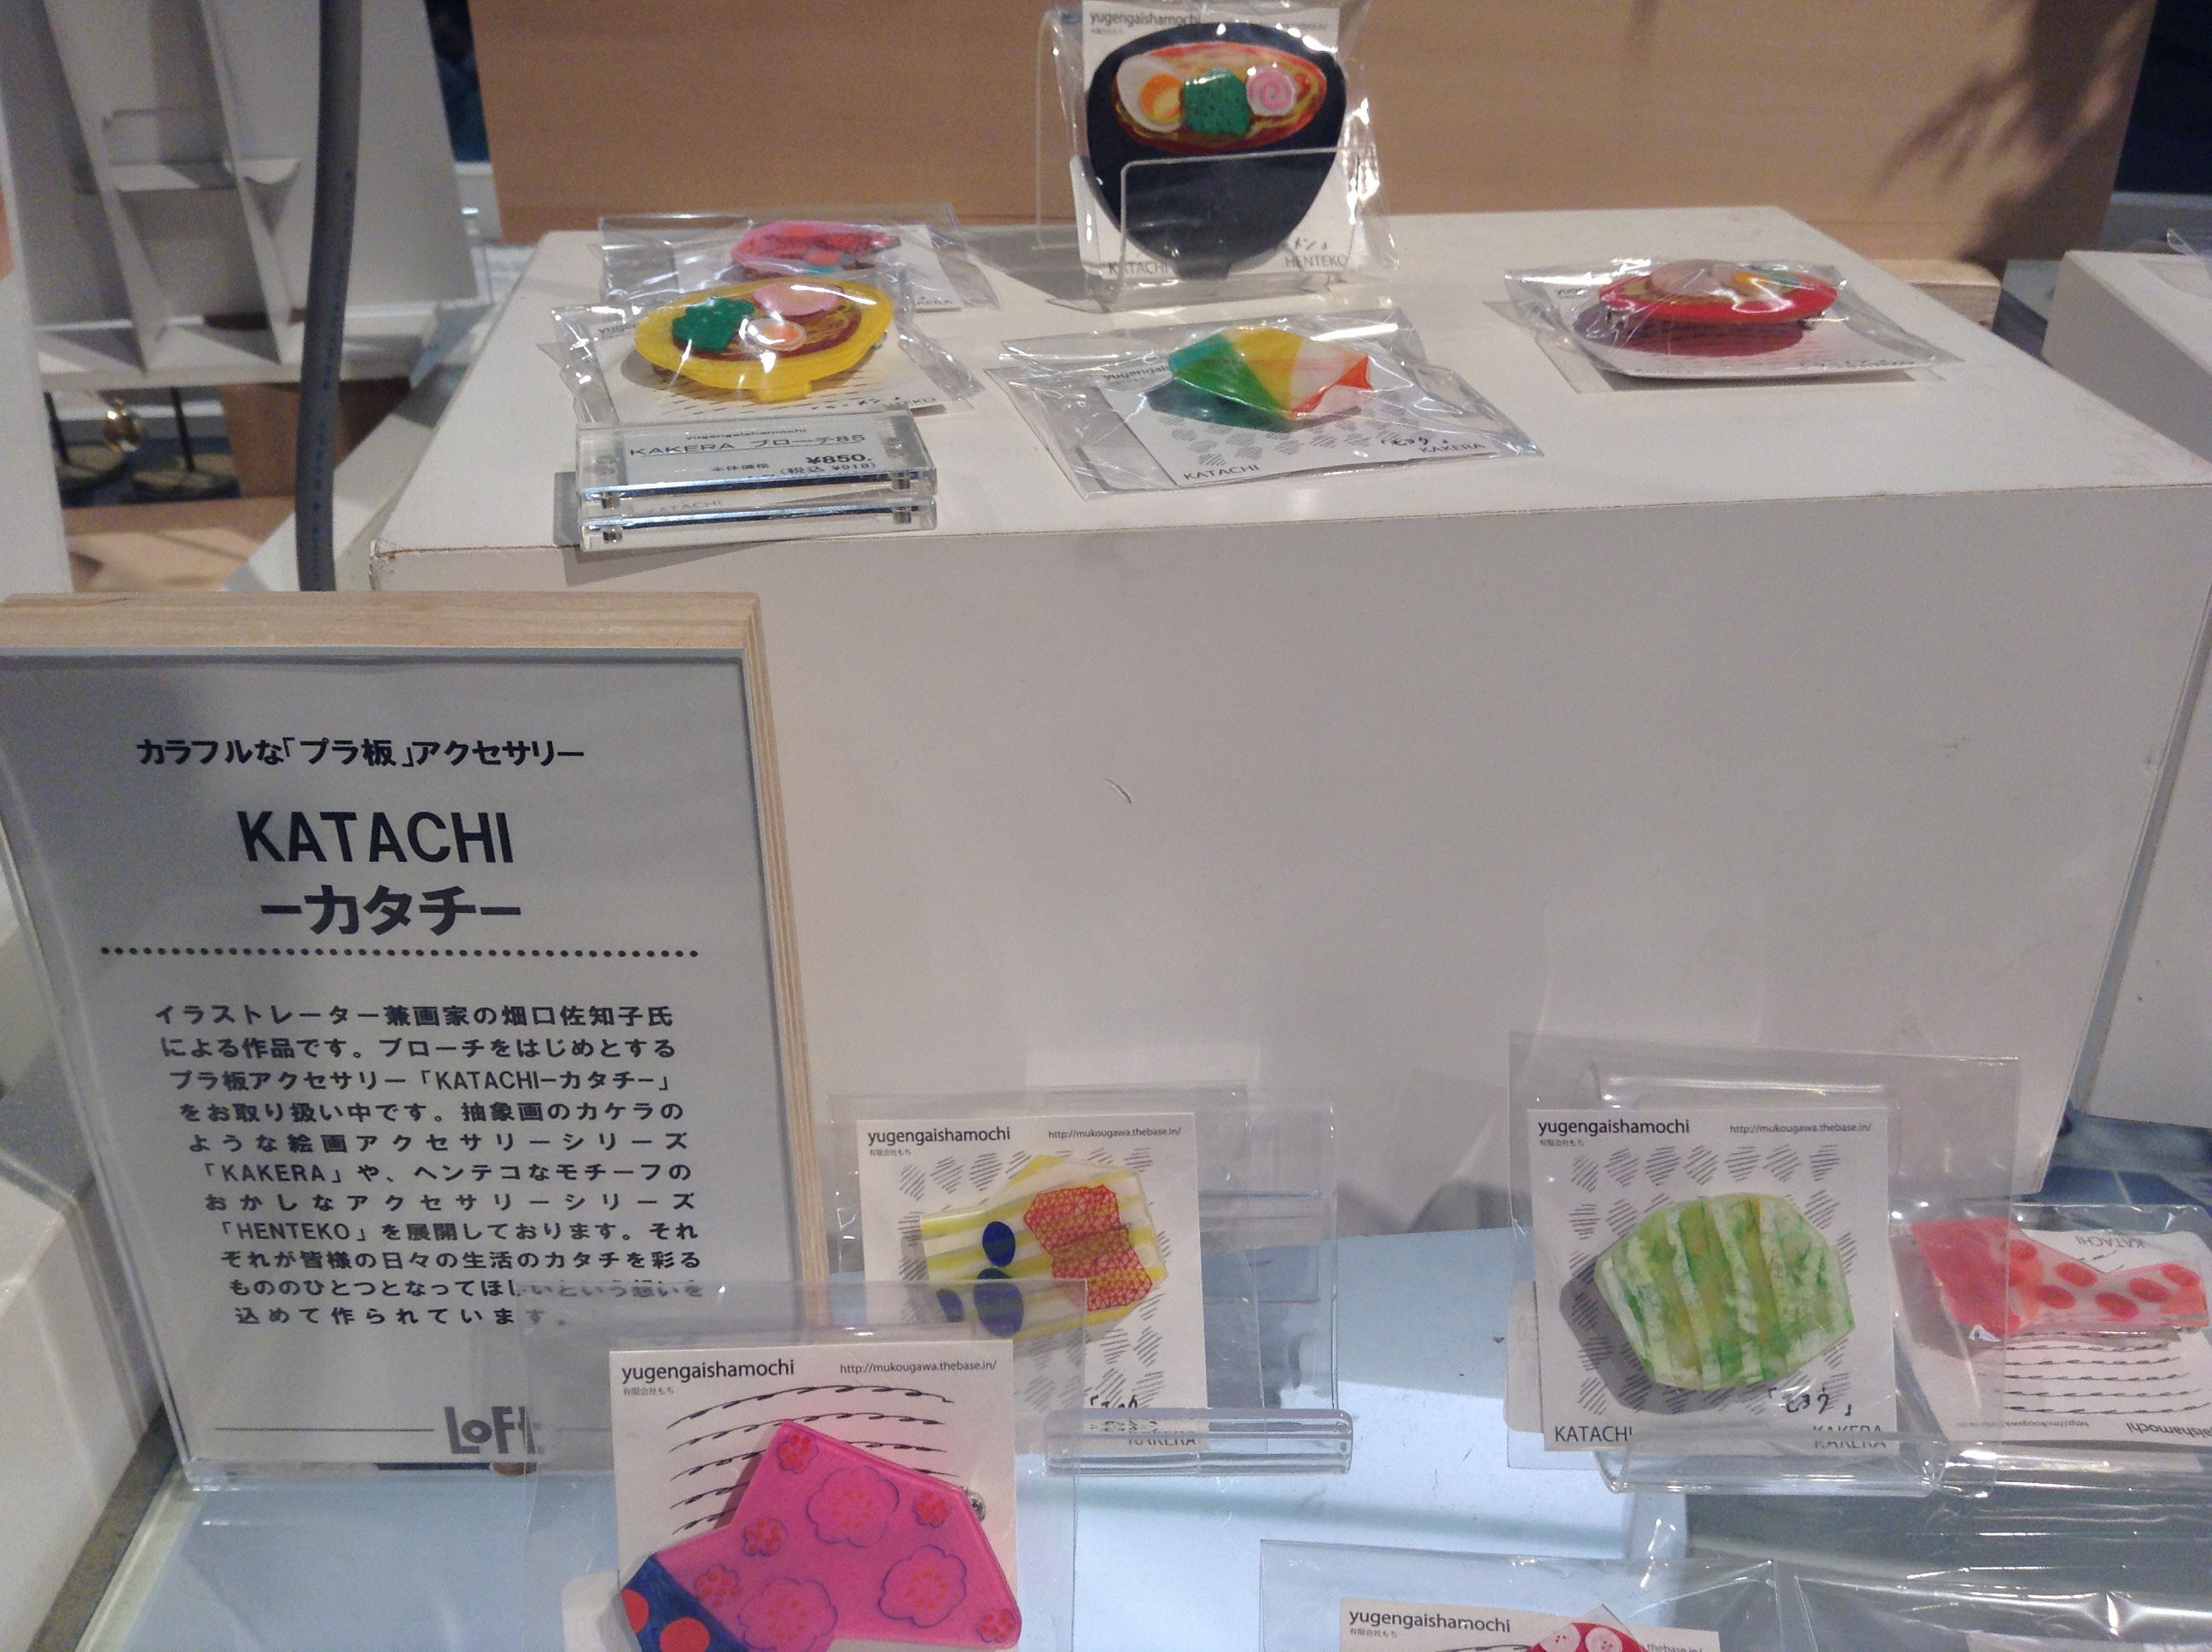 渋谷ロフトpop-up shop「夏を感じるきらり さらり 手づくりアクセサリー」に出展しております